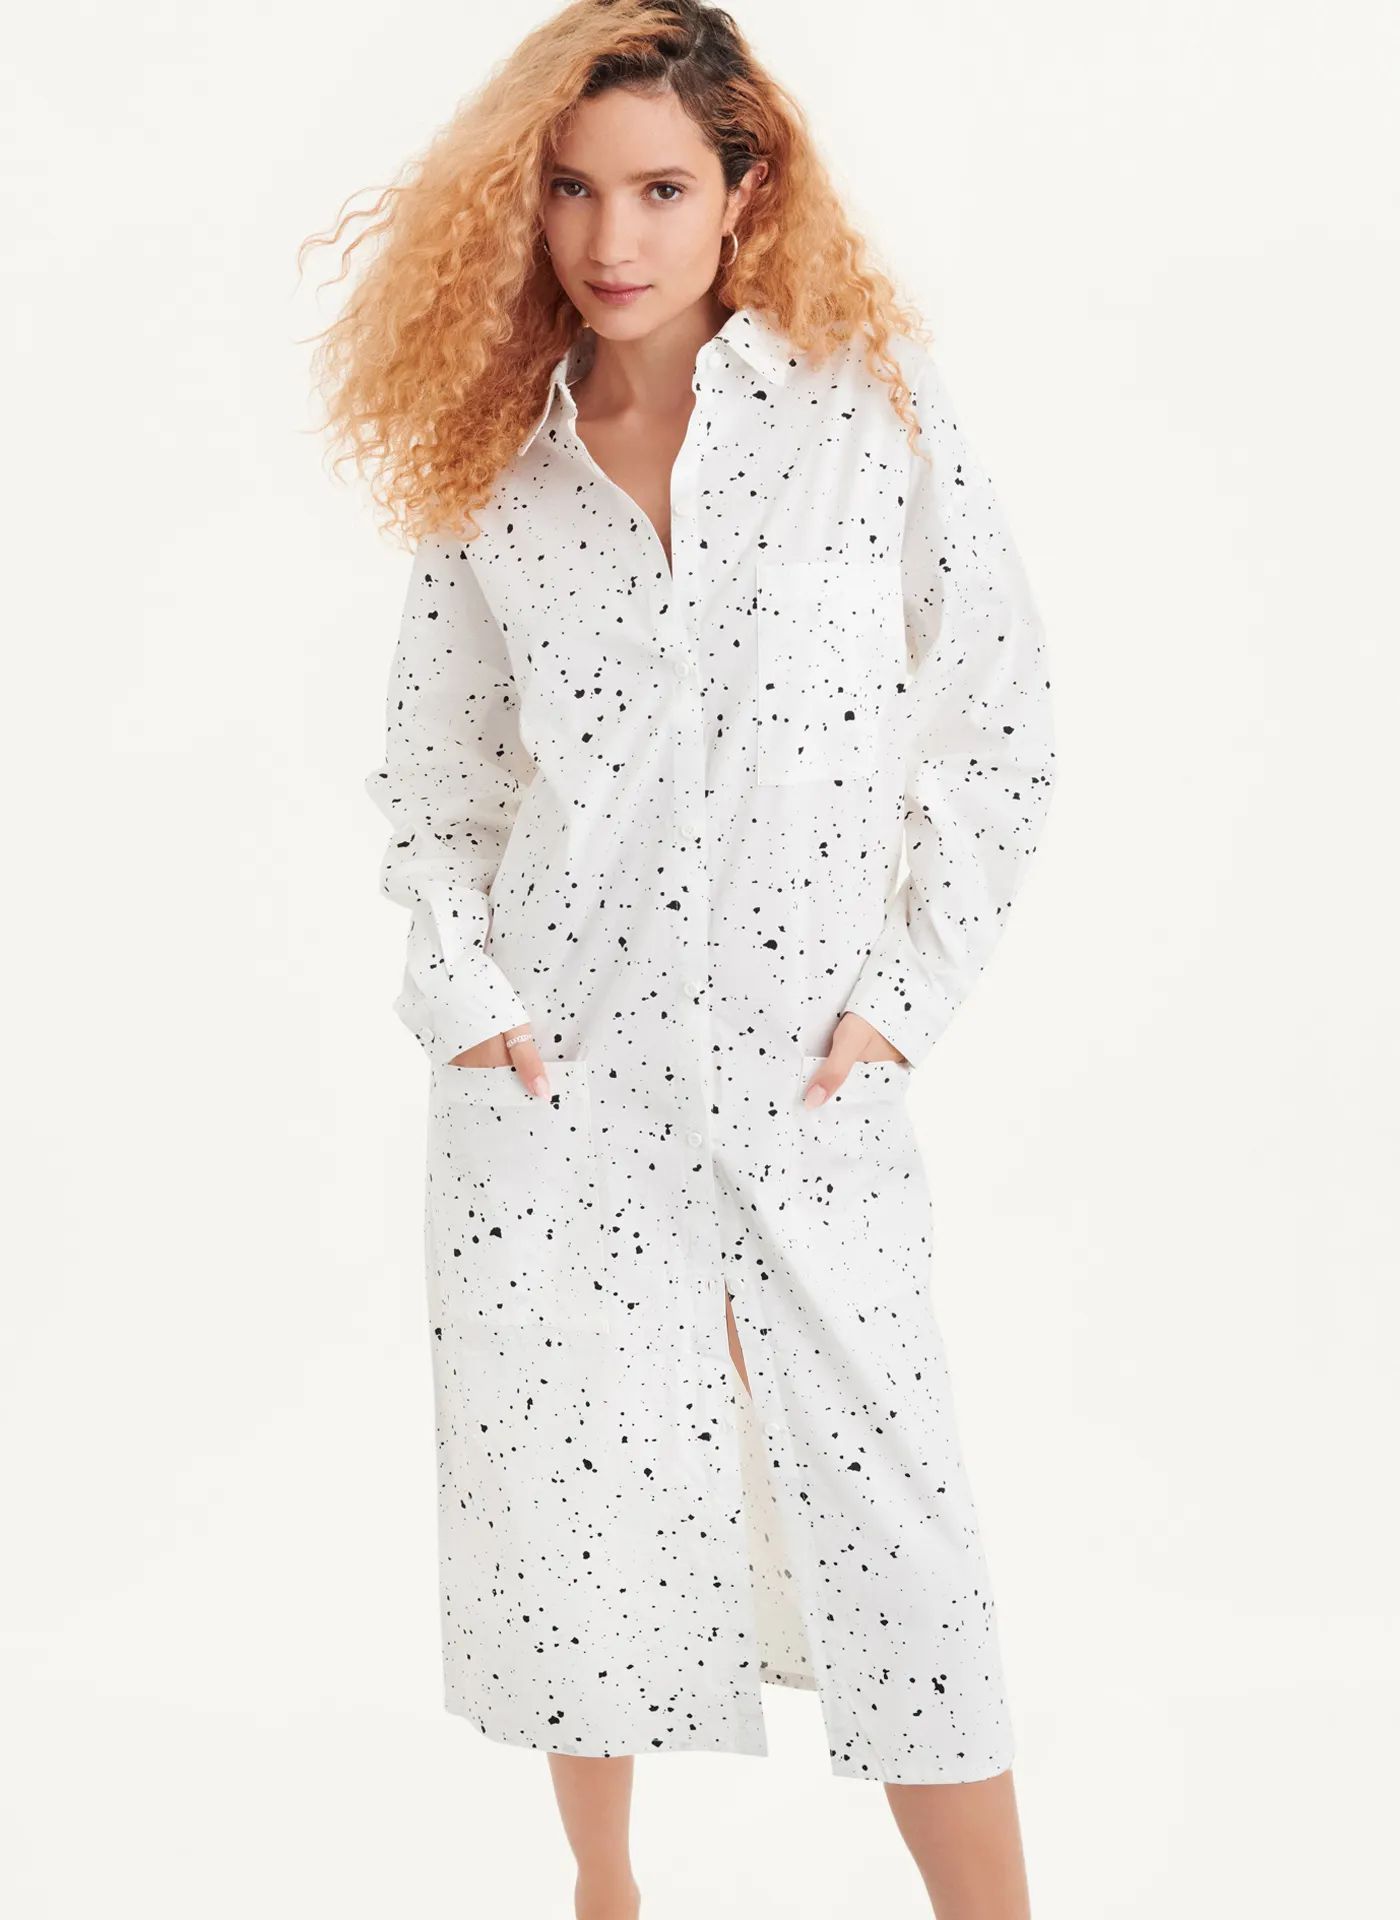 Splatter Print Dress - DKNY | DKNY